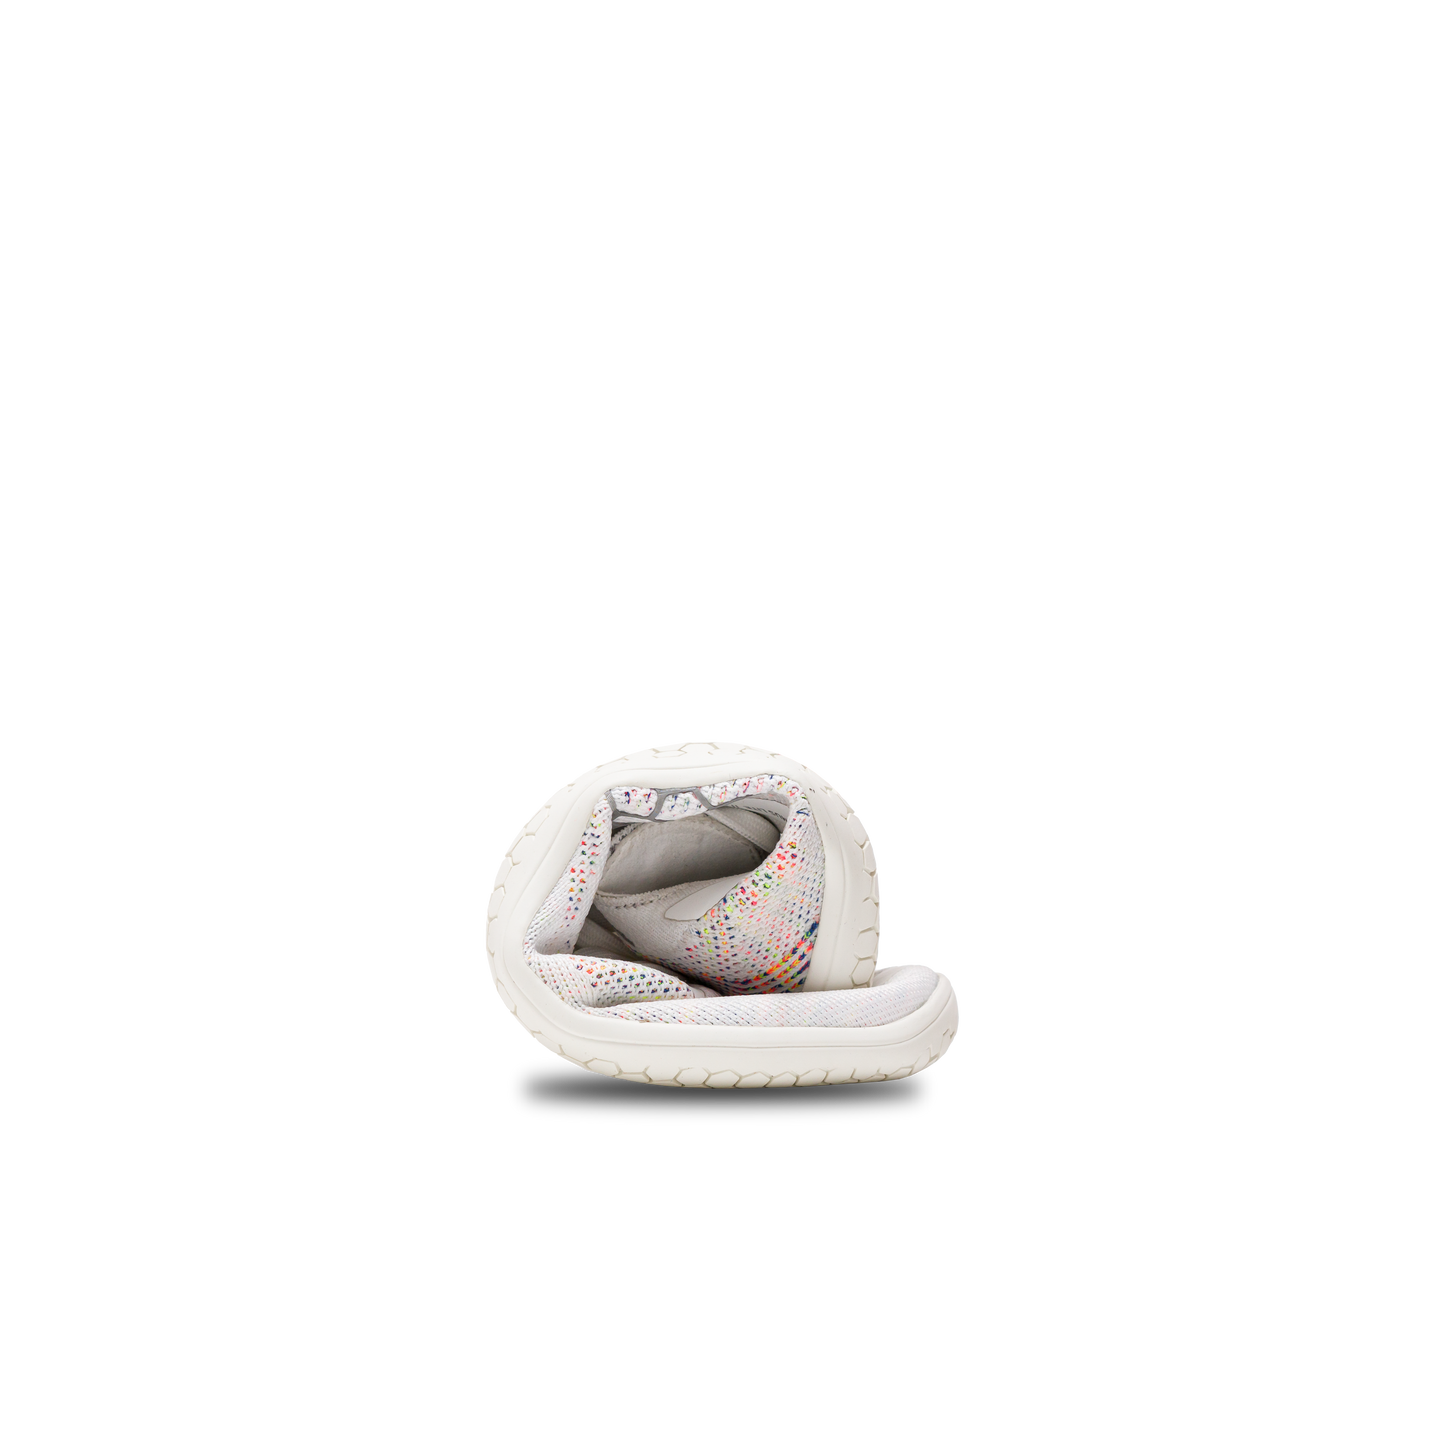 Primus Lite Knit damesko fra Vivobarefoot i varianten Bright White Iridescent, rullet sammen for at vise fleksibilitet og barfodsfornemmelse, letvægtsdesign med genbrugsmaterialer.